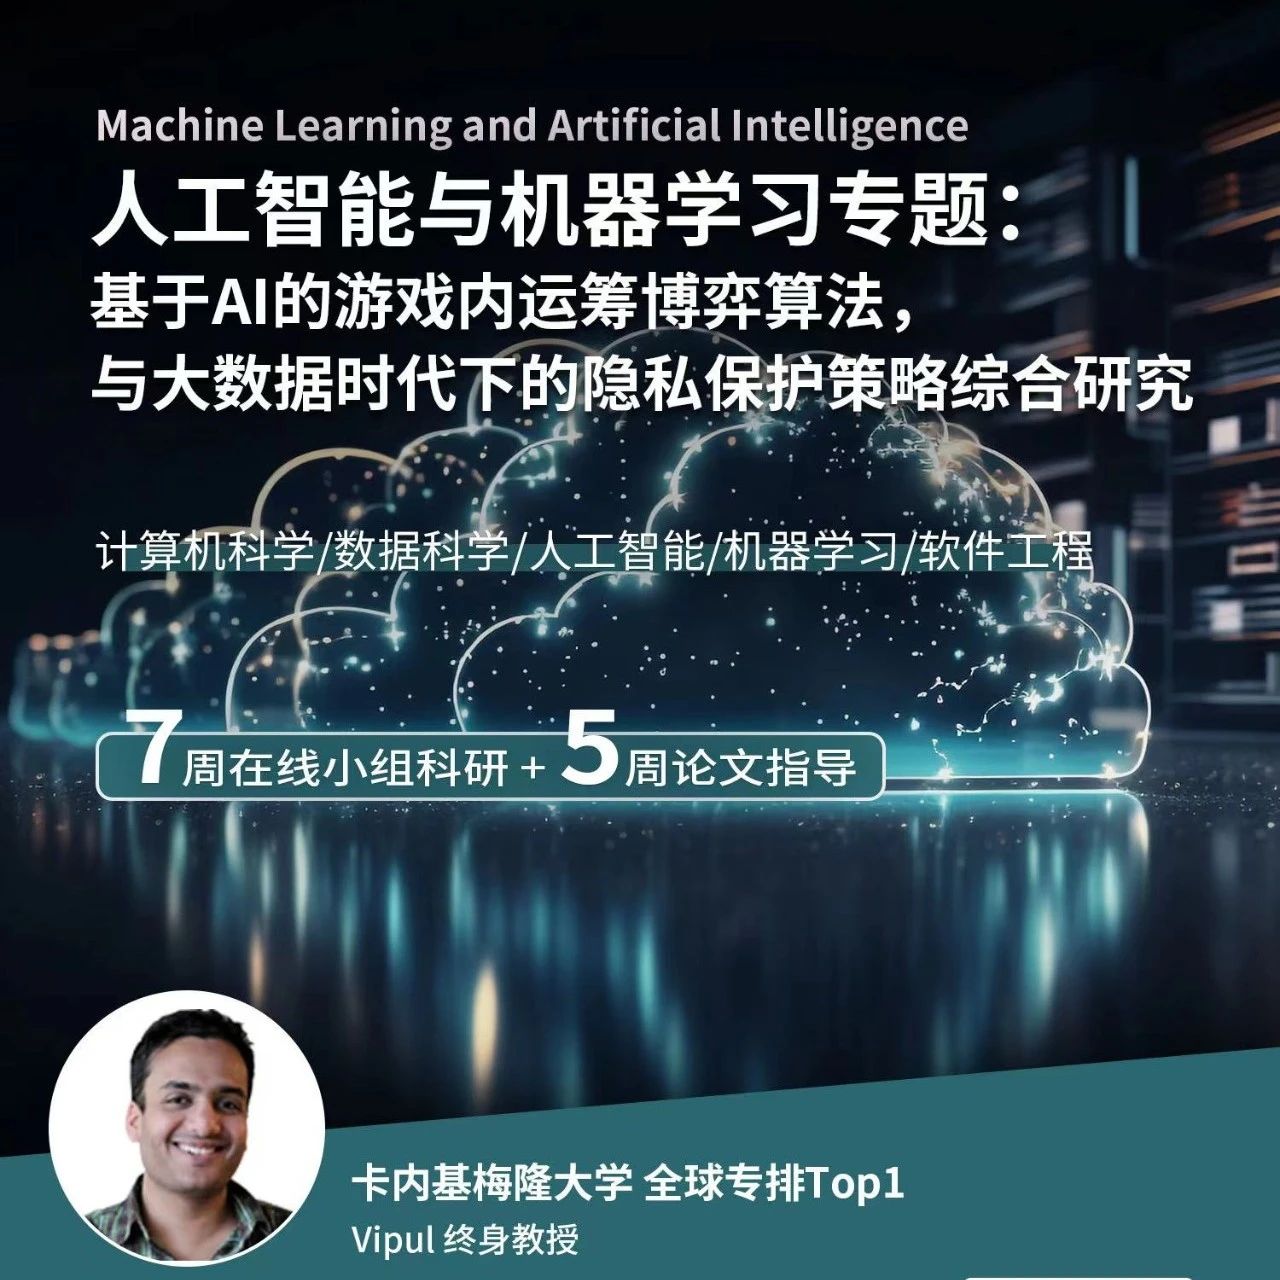 CMU 人工智能与机器学习科研项目： 基于AI的游戏内运筹博弈算法，与大数据时代下的隐私保护策略综合研究